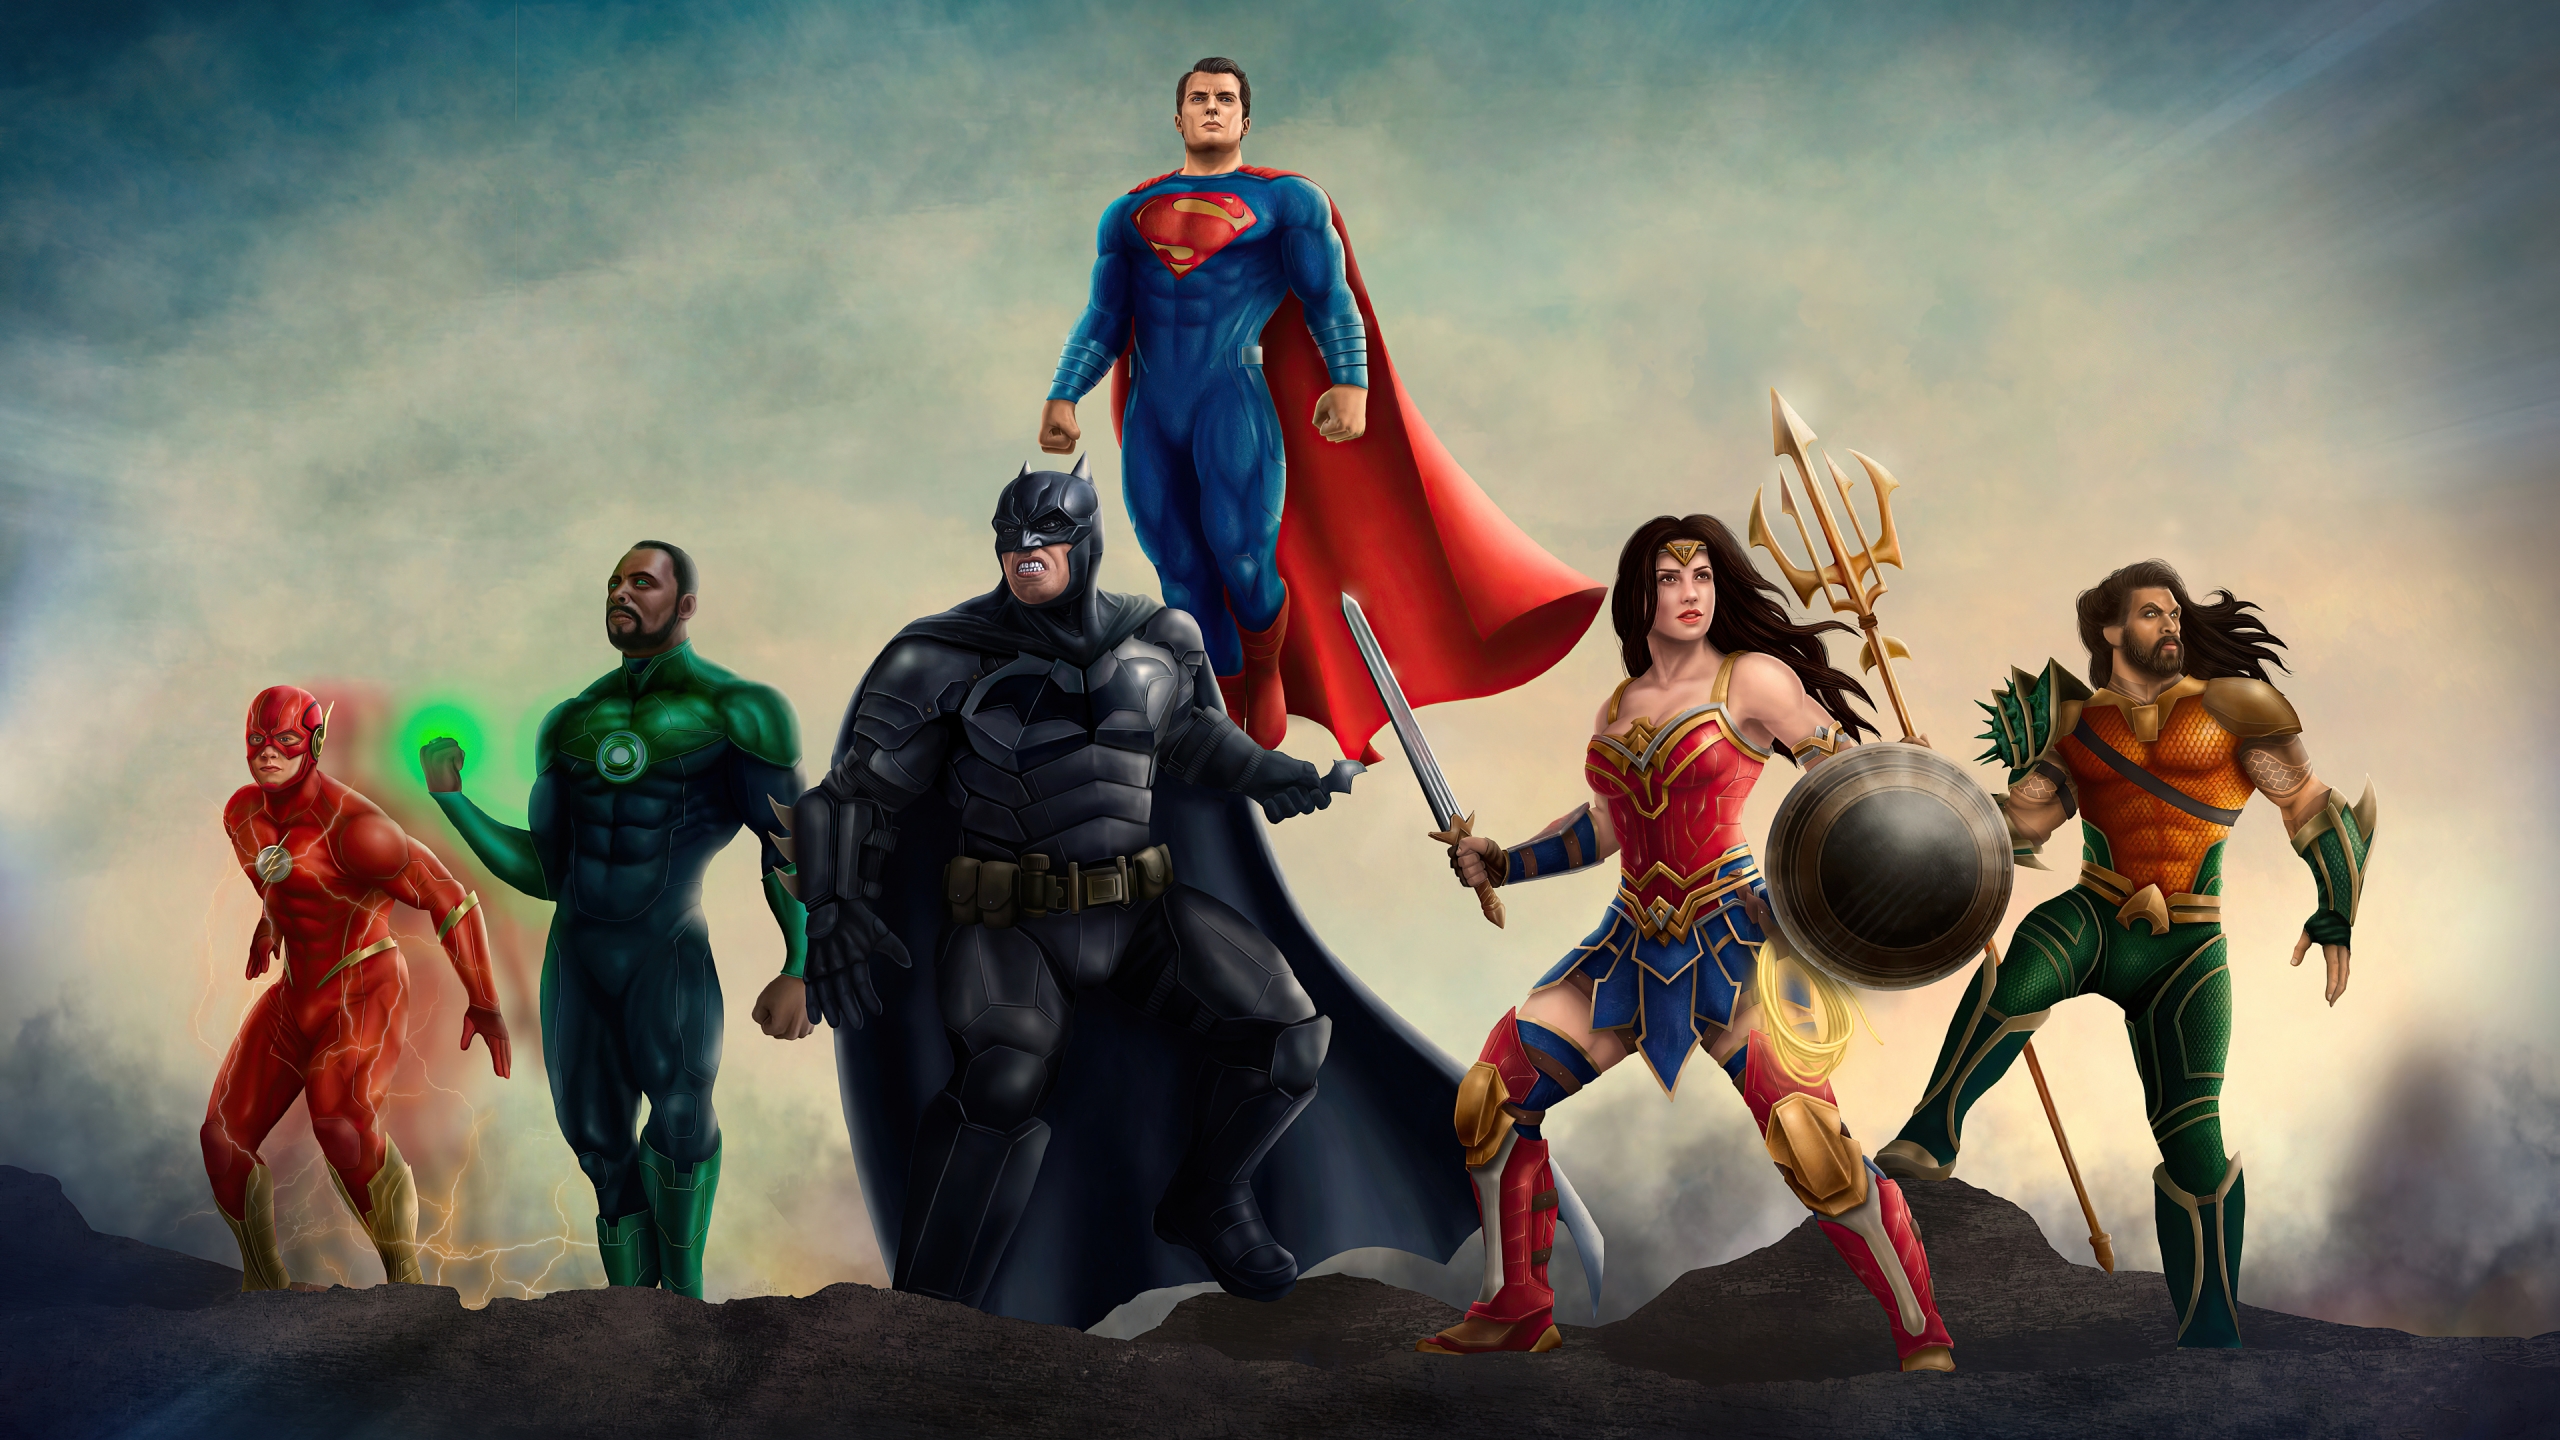 Justice League Heroes 2020 Wallpaper 4k Ultra HD ID:6191